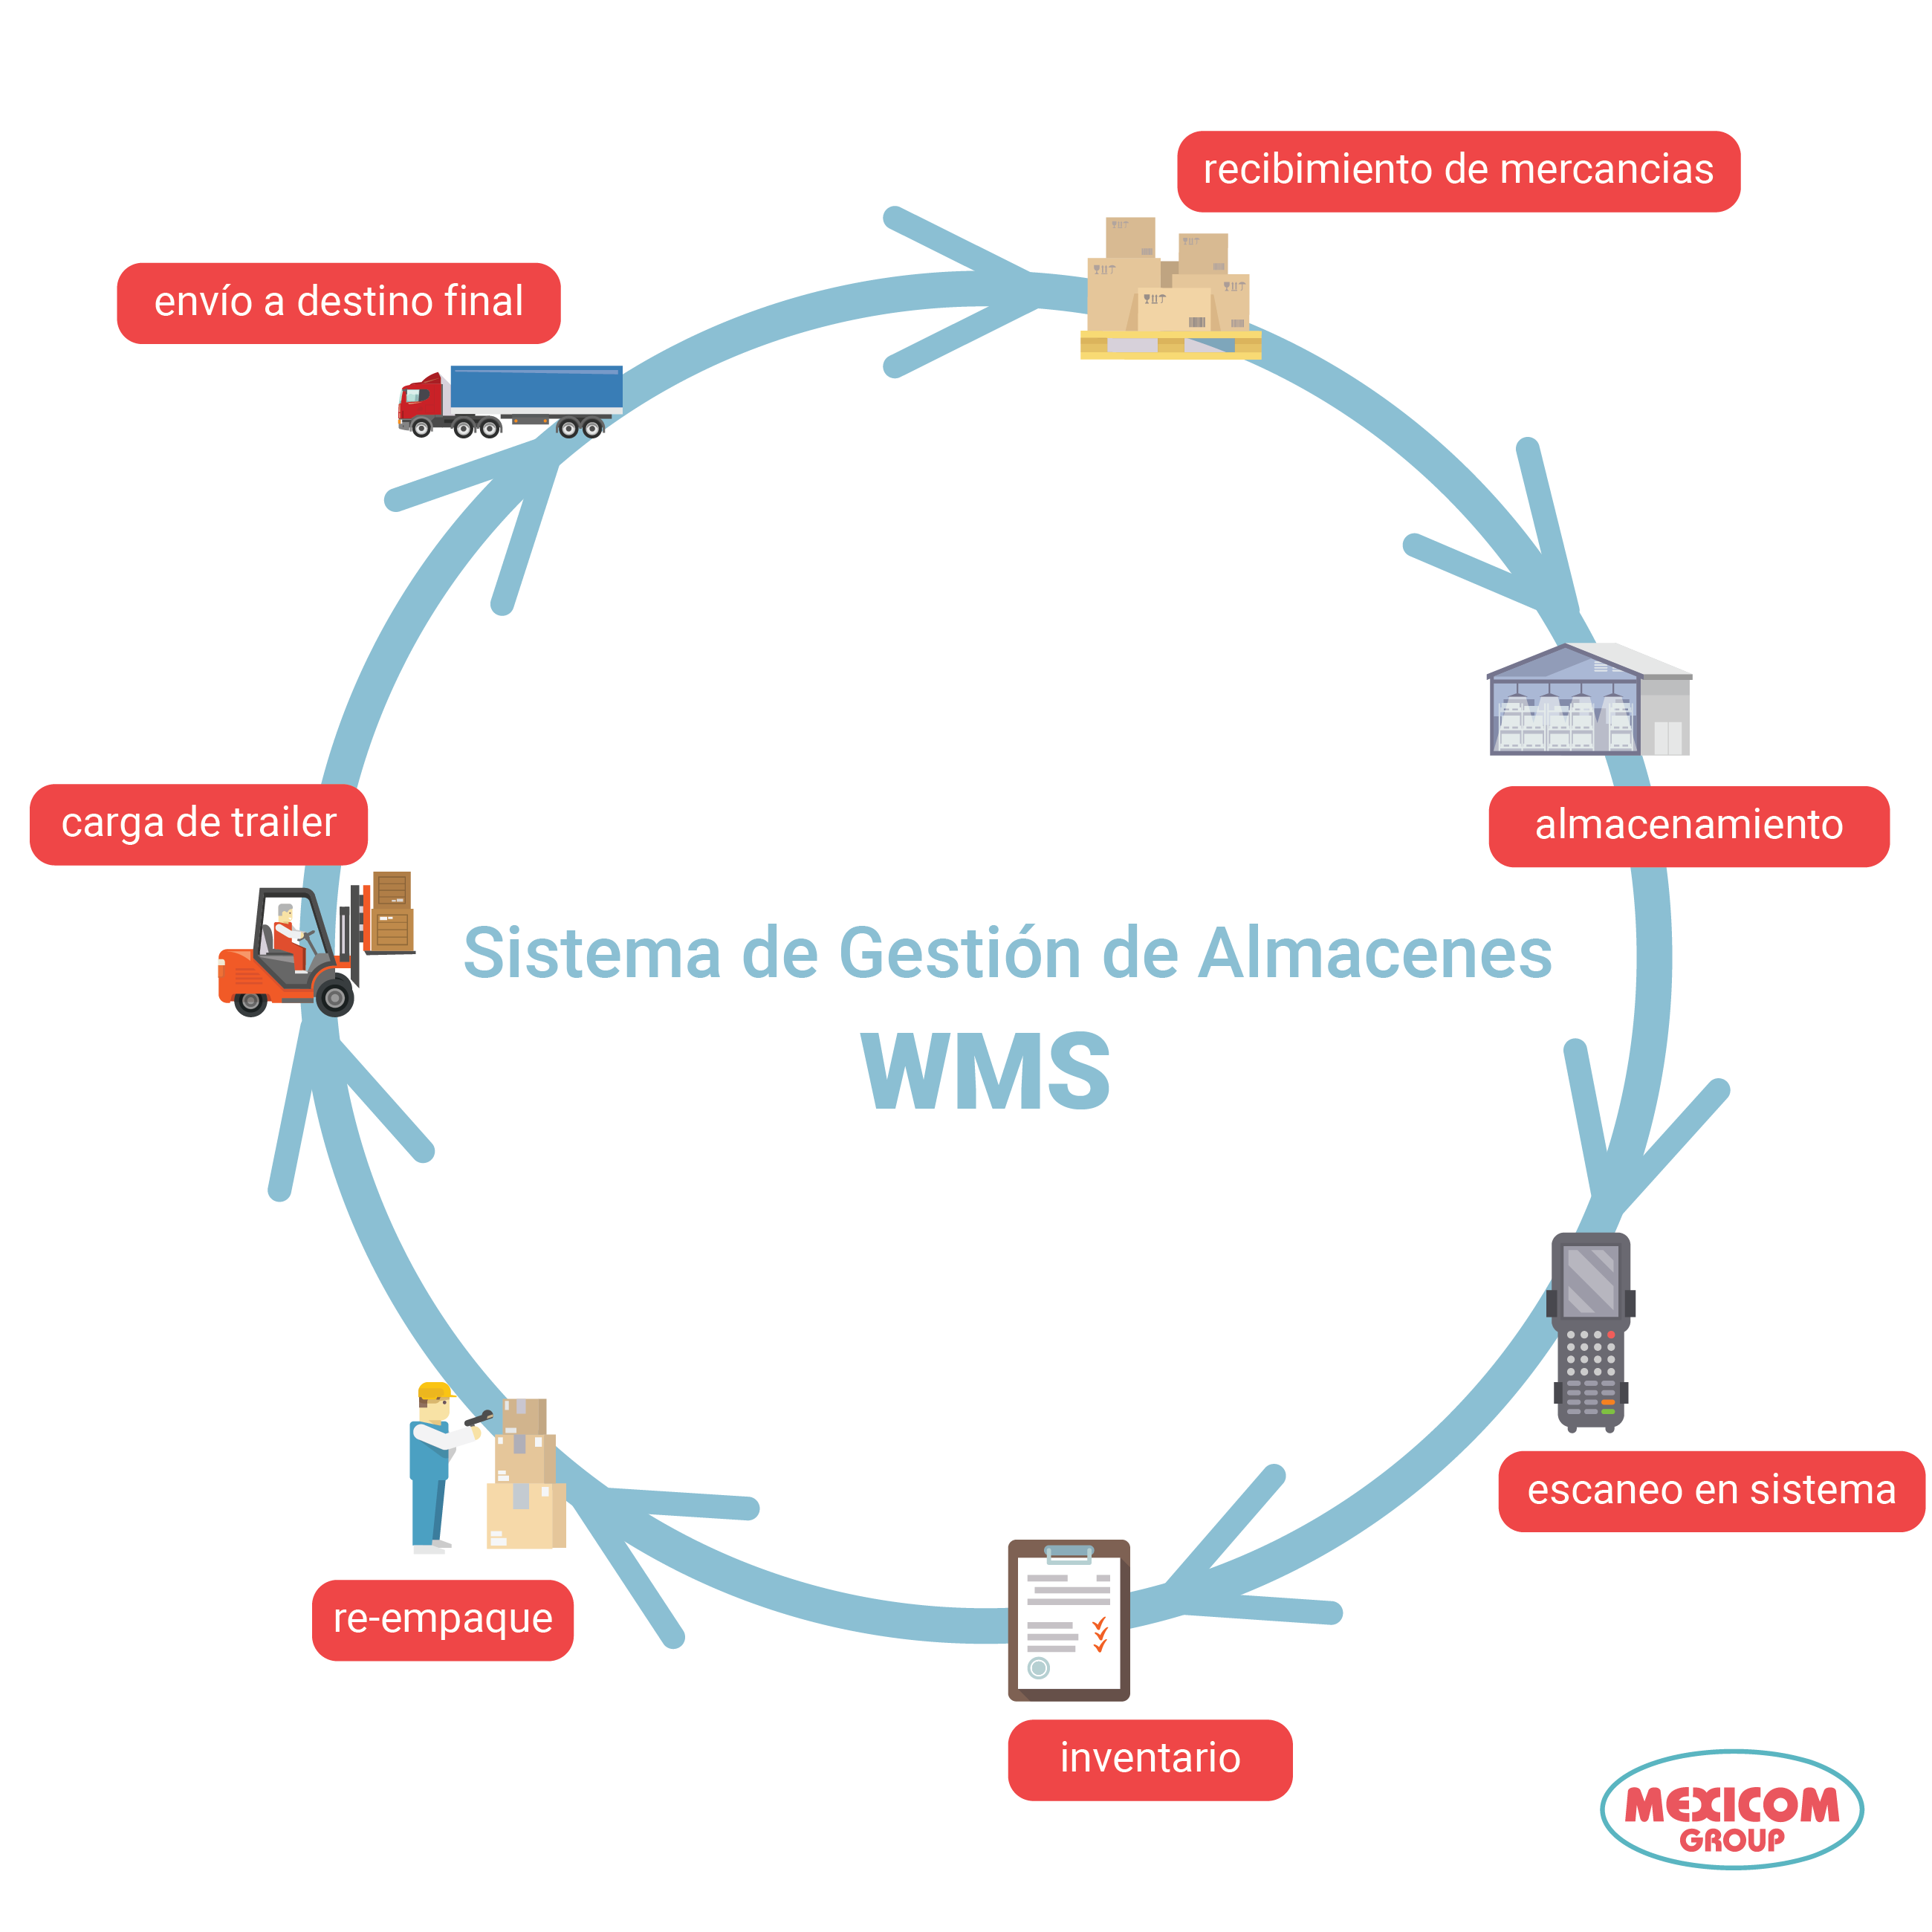 grafico de sistema de gestion de almacenenes WMS por sus siglas en ingles warehouse management system